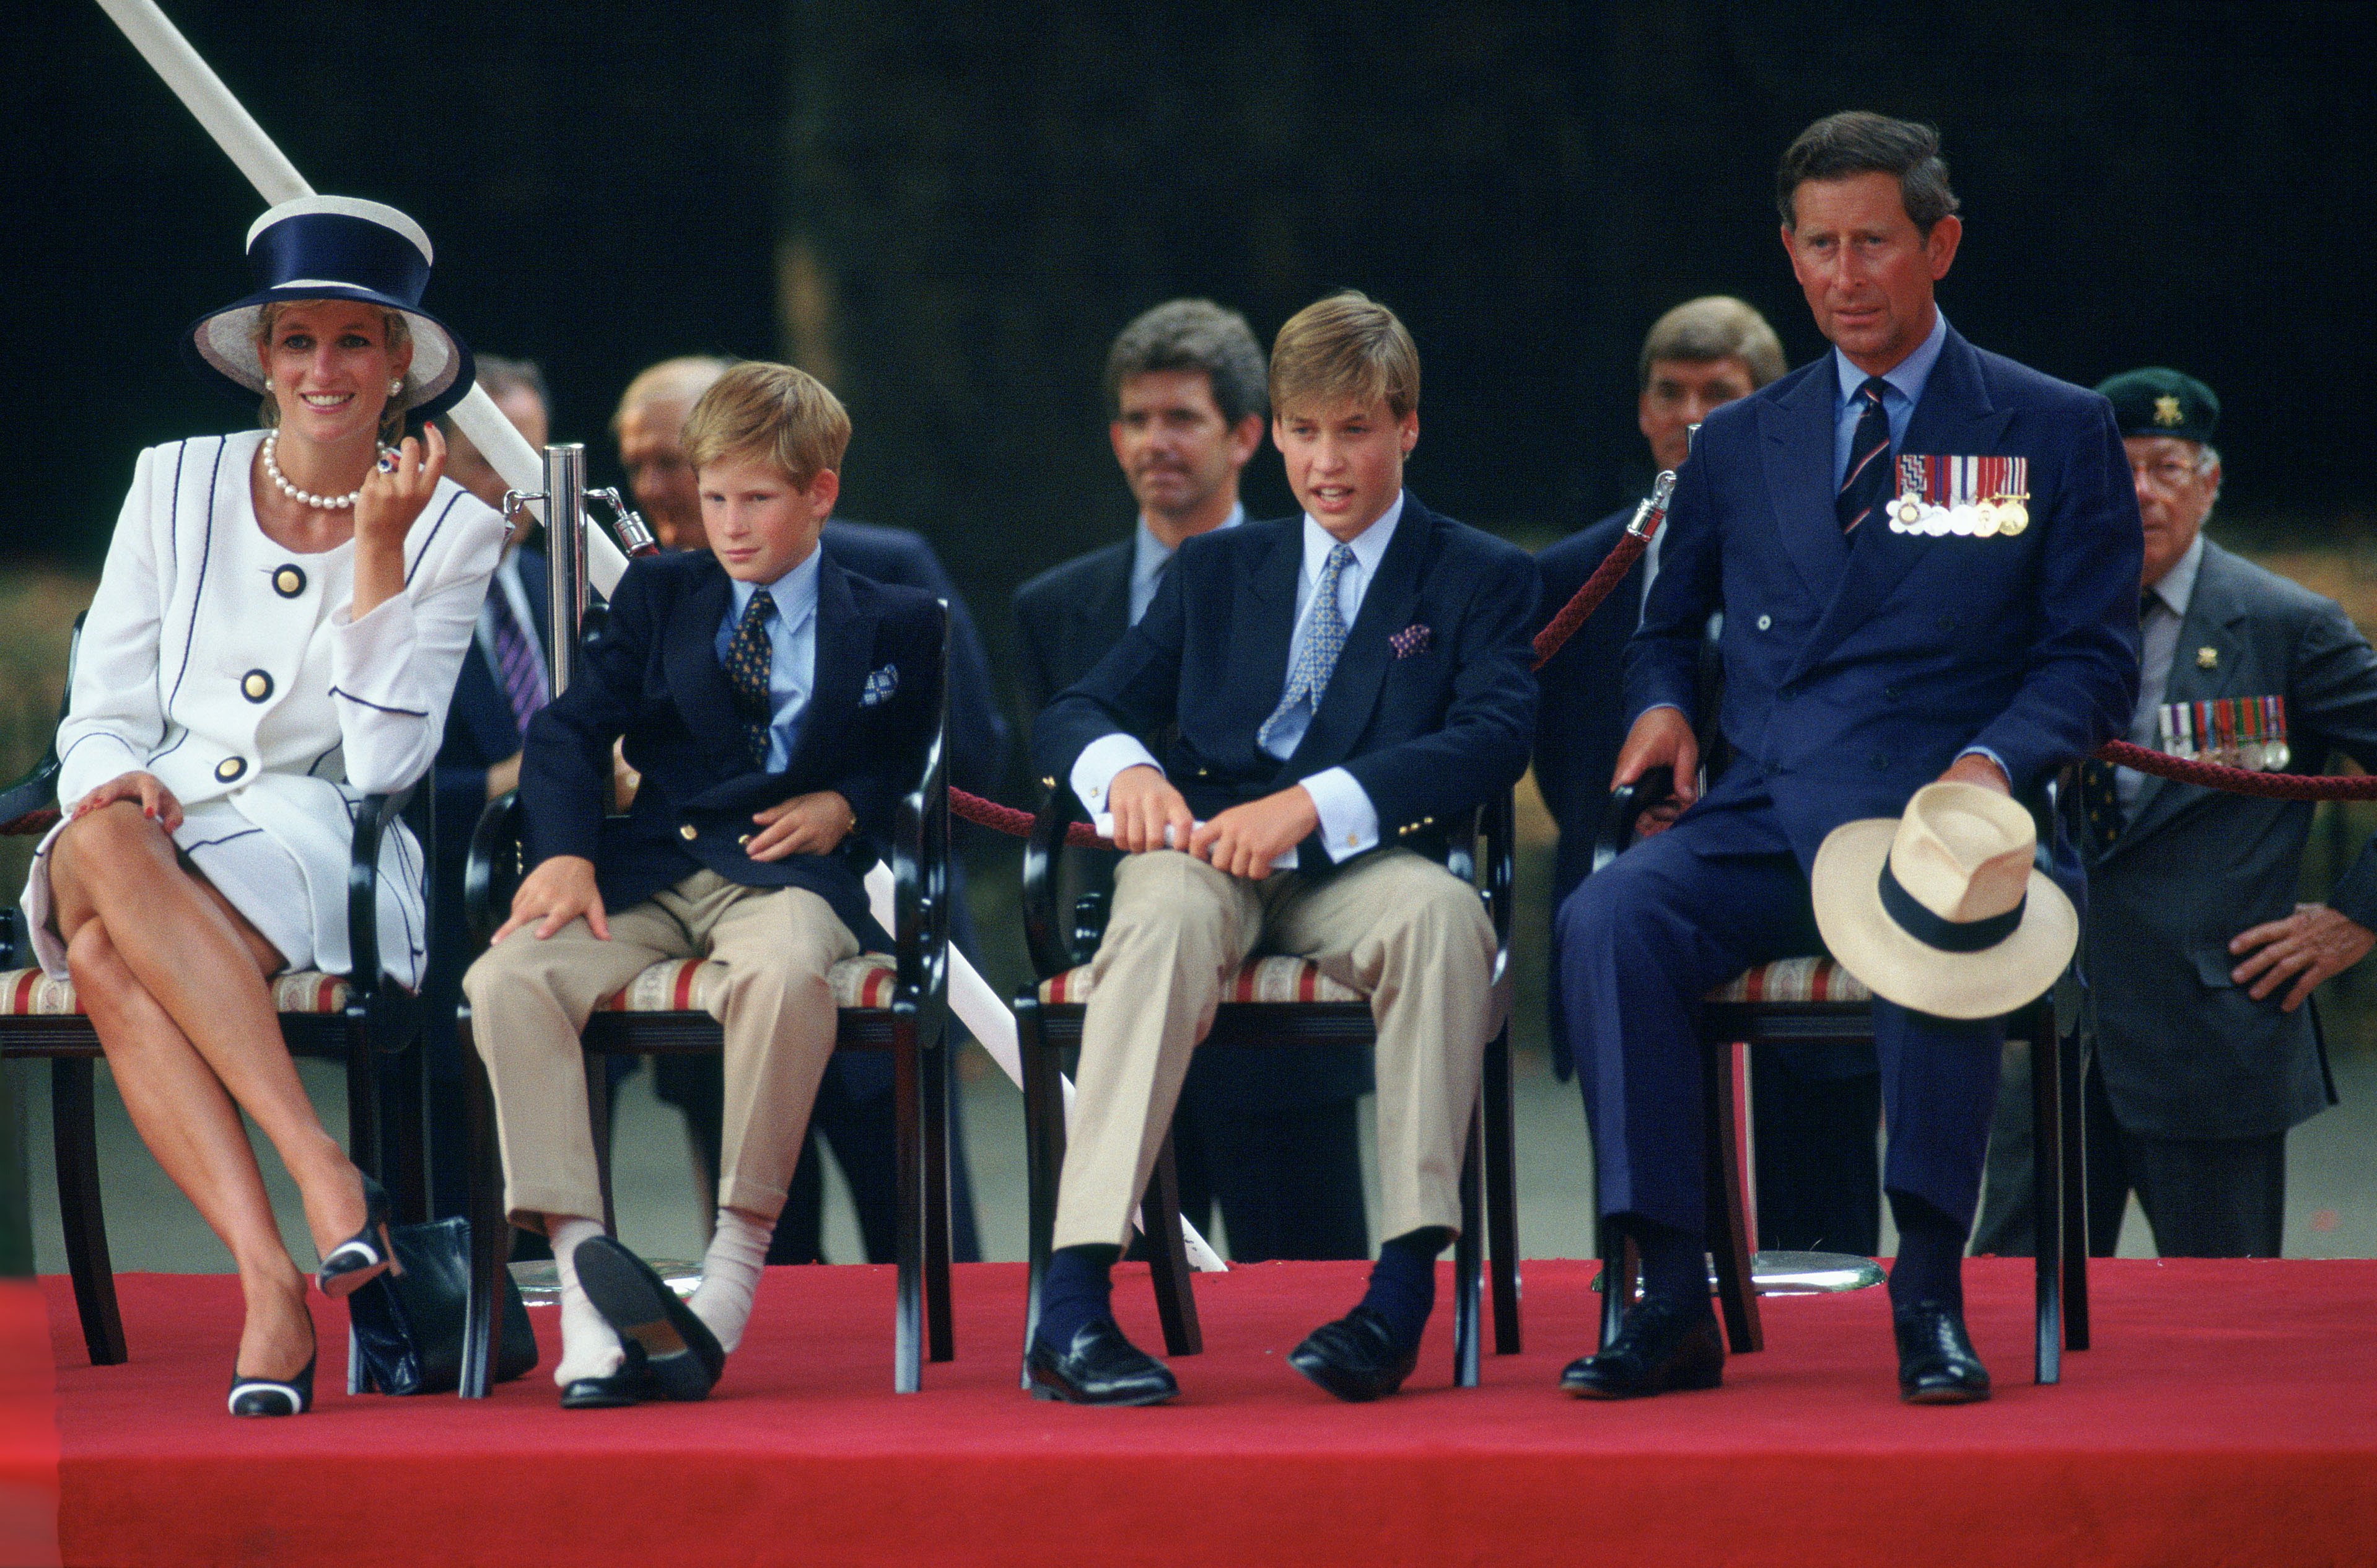 Prinz Harry hat seine Schuhe ausgezogen, während er die Parade zum 50-jährigen Jubiläum des Vj Day verfolgte. Er sitzt mit seiner Familie zusammen - Diana, Prinzessin von Wales, Prinz Charles und Prinz William. | Quelle: Getty Images